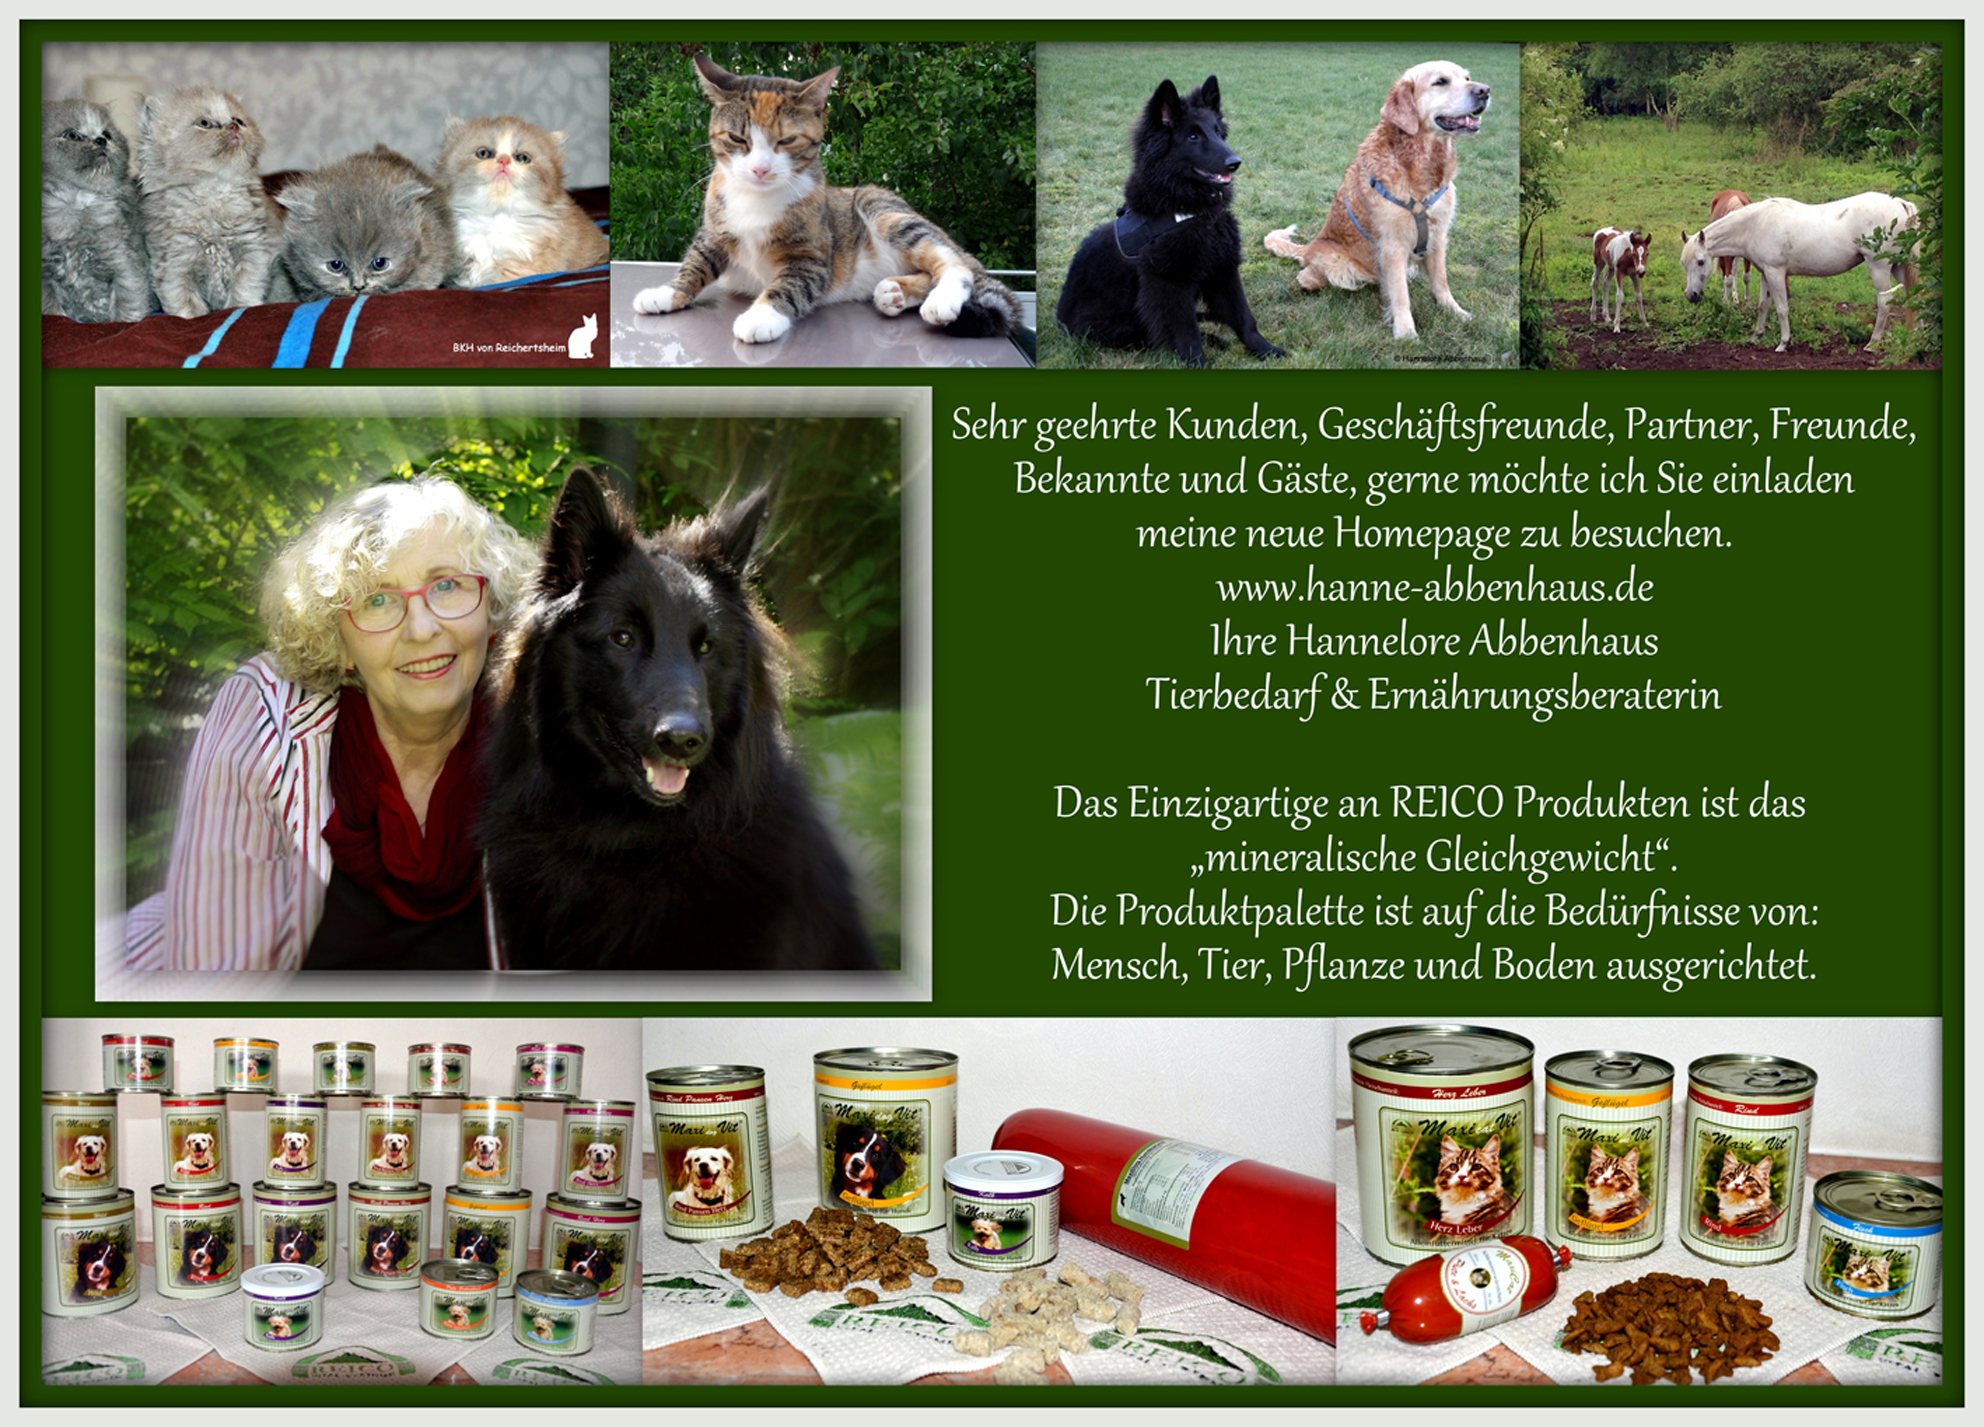 Bild 4 Tierbedarf & Ernährungsberatung Hannelore Abbenhaus in Buxtehude